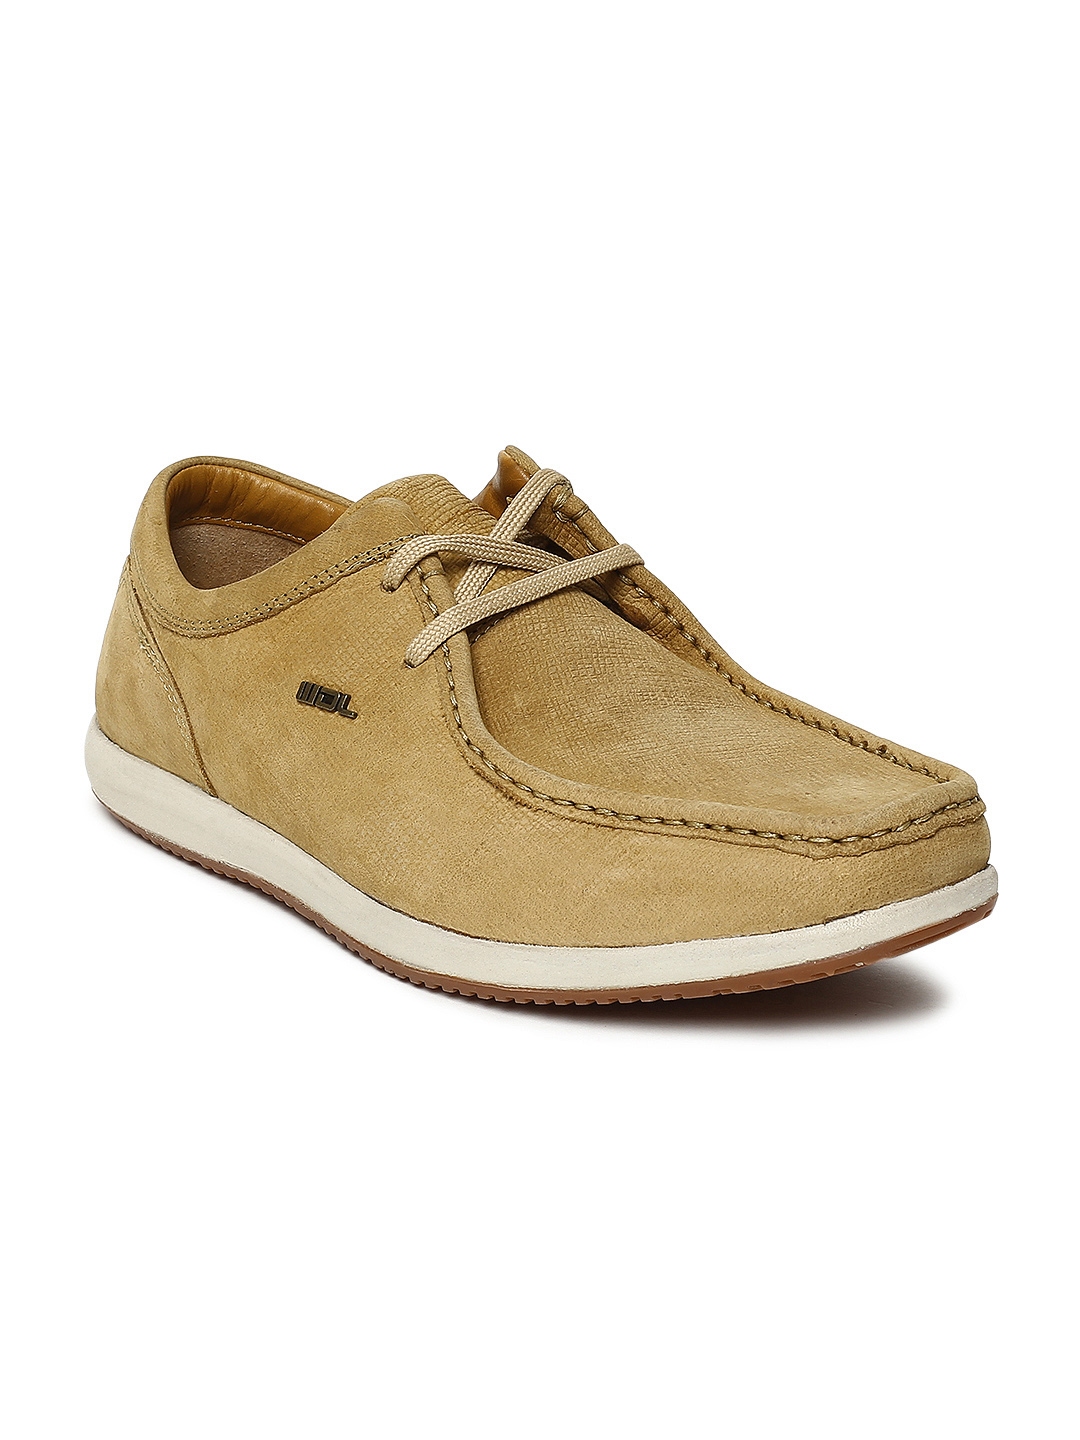 Buy Woodland Men Camel Brown Nubuck Derbys - Casual Shoes for Men ...